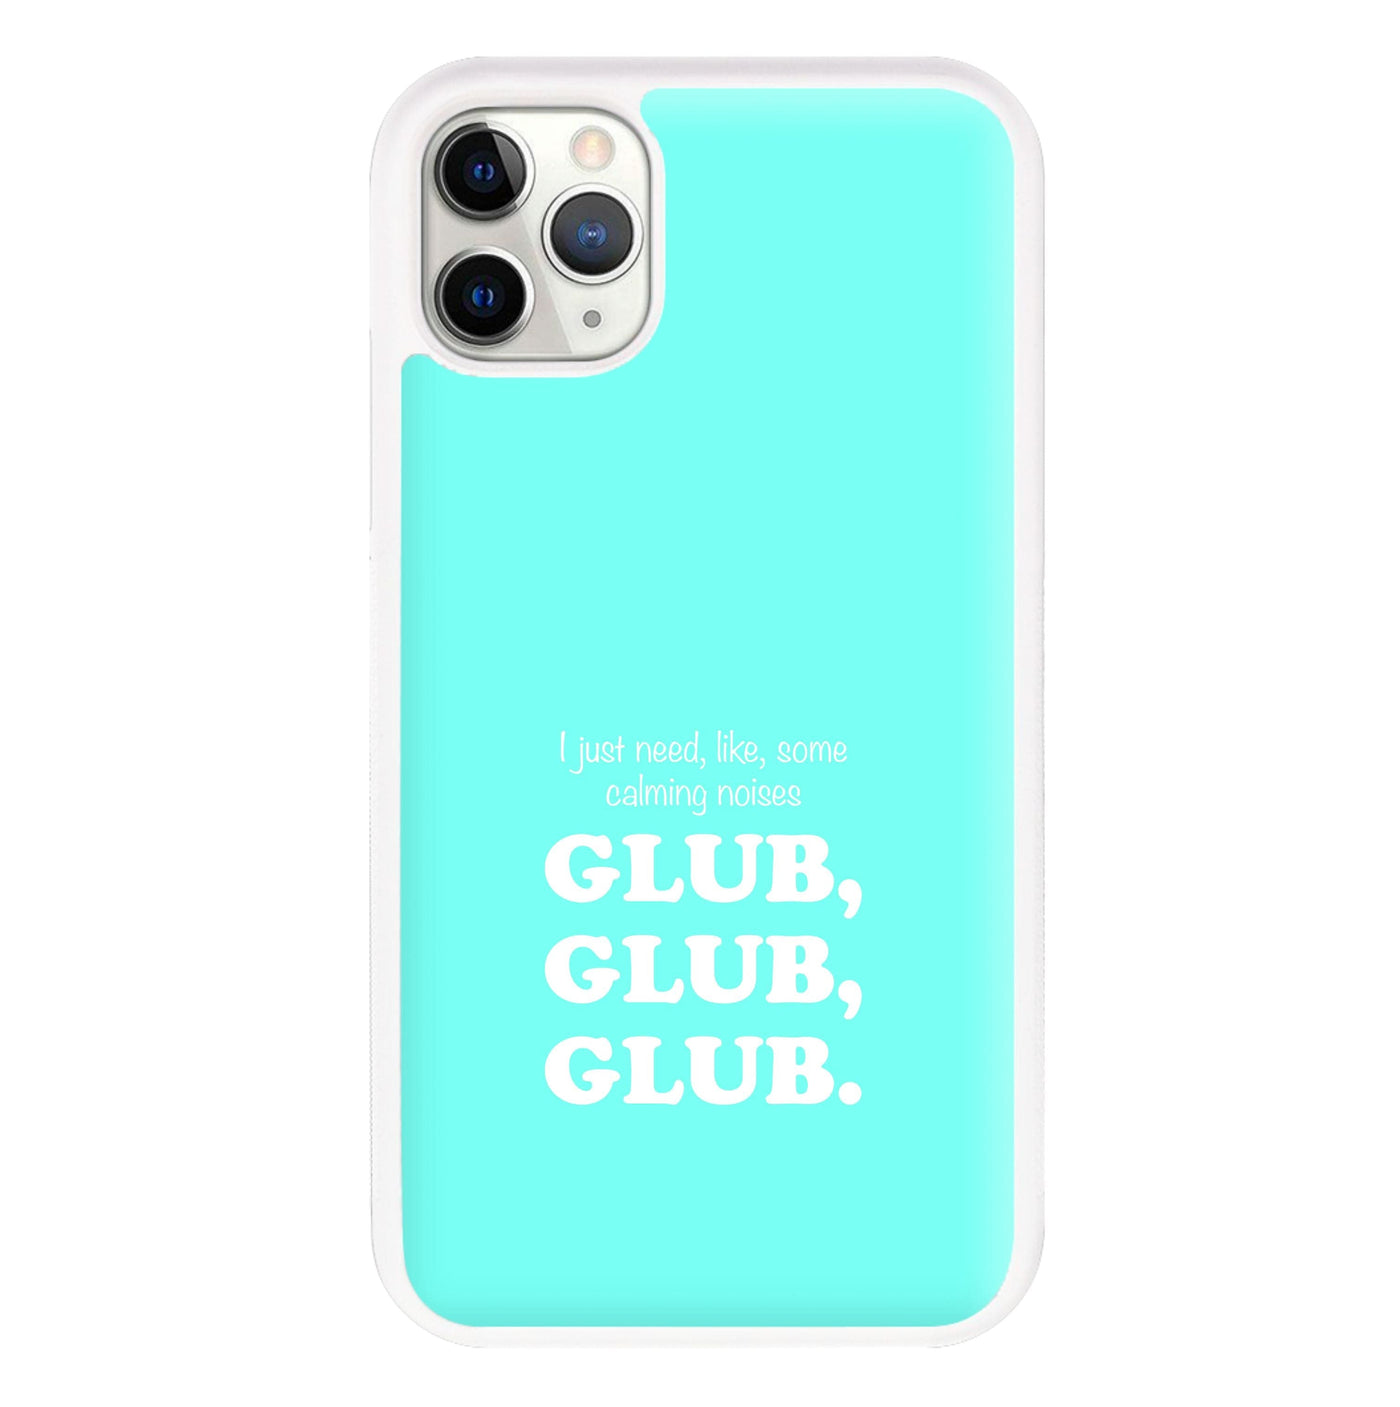 Glub Glub Glub - Brooklyn Nine-Nine Phone Case